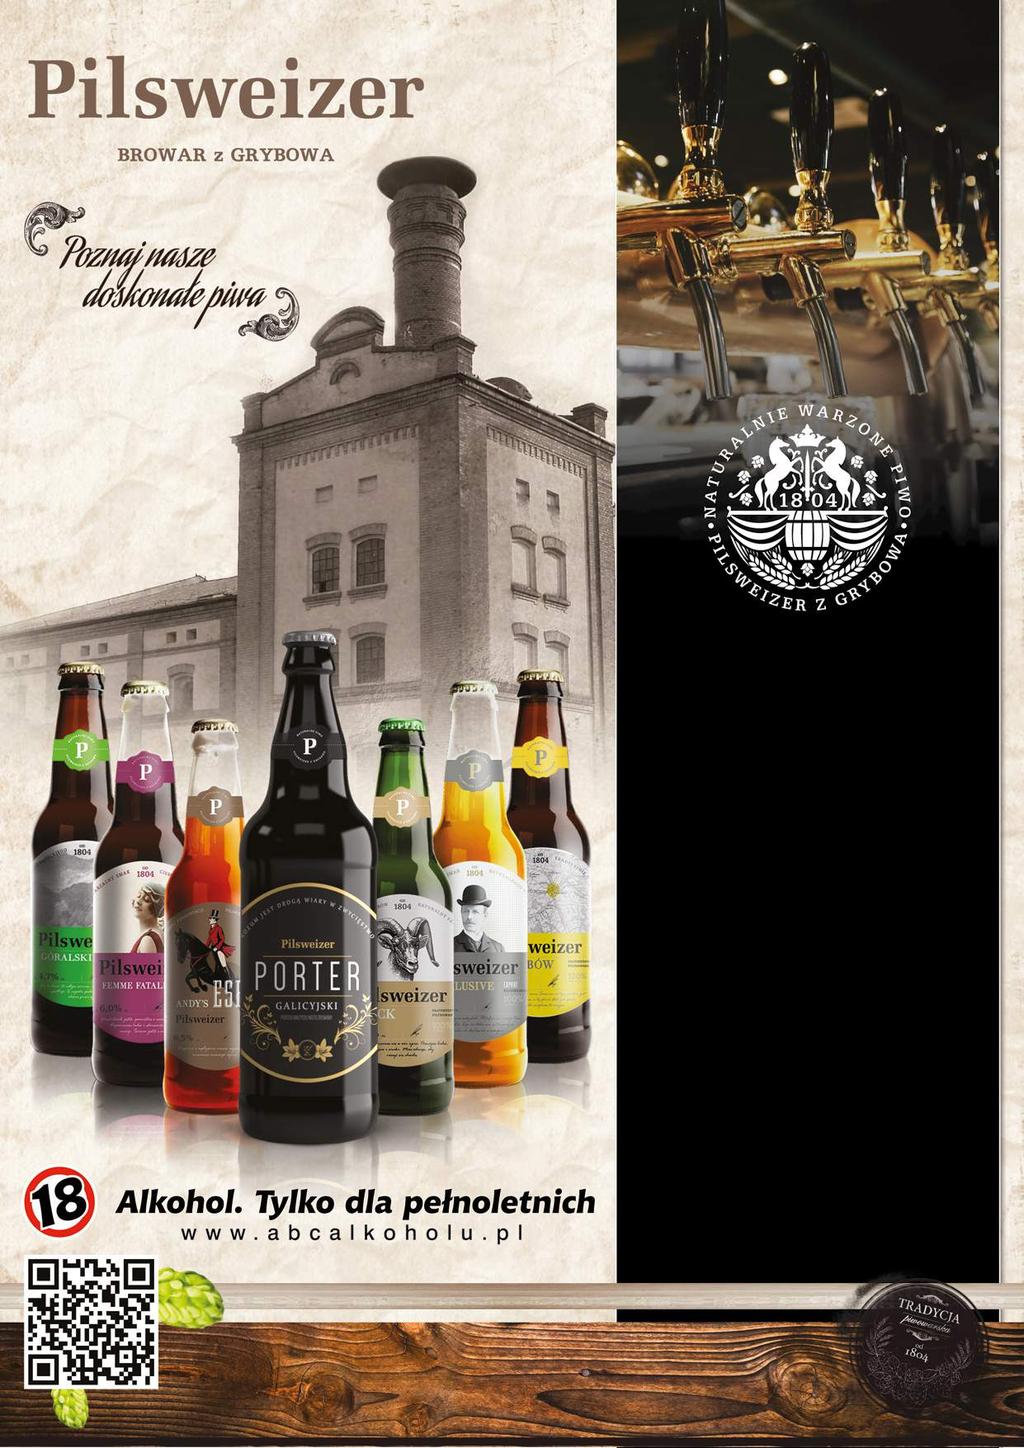 Rzemieślnicze piwo z Regionalnego browaru - Tradycja od 1804 r. Browar Pilsweizer z Grybowa to historia i tradycja sięgająca XIX wieku.